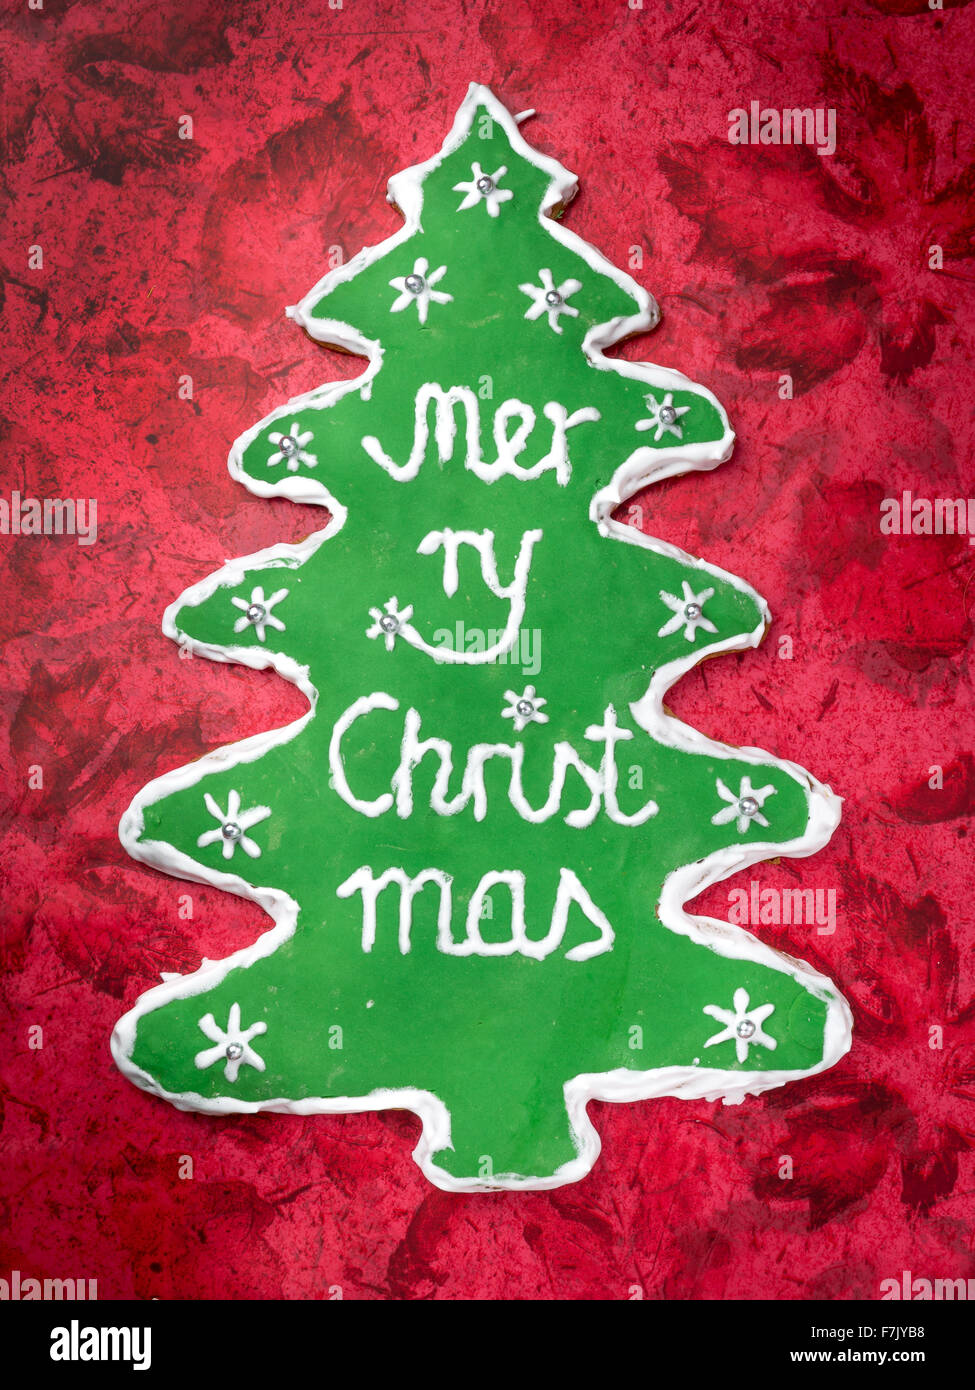 Weihnachtsbaum-wie Lebkuchen mit grüner Glasur und Frohe Weihnachten schreiben auf rotem Grund Stockfoto